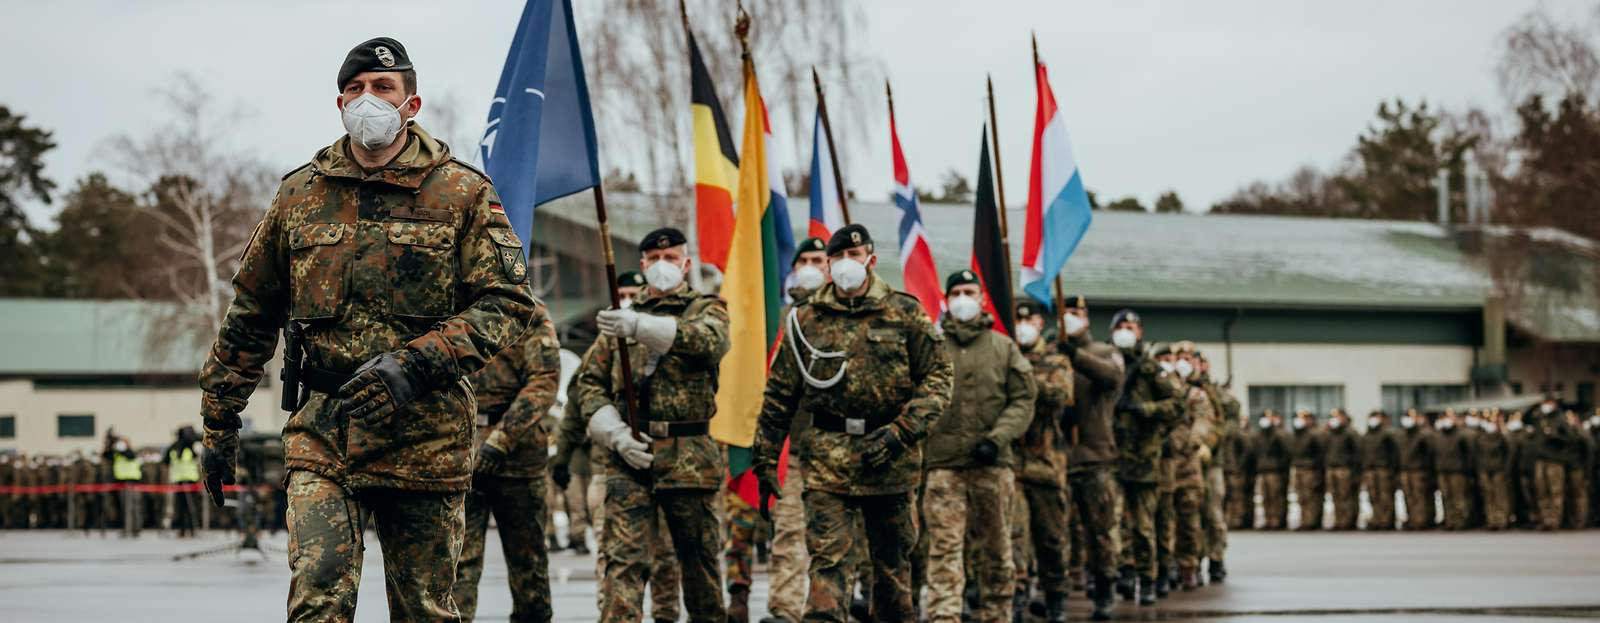 НАТО оденет украинских военных в зимнюю форму